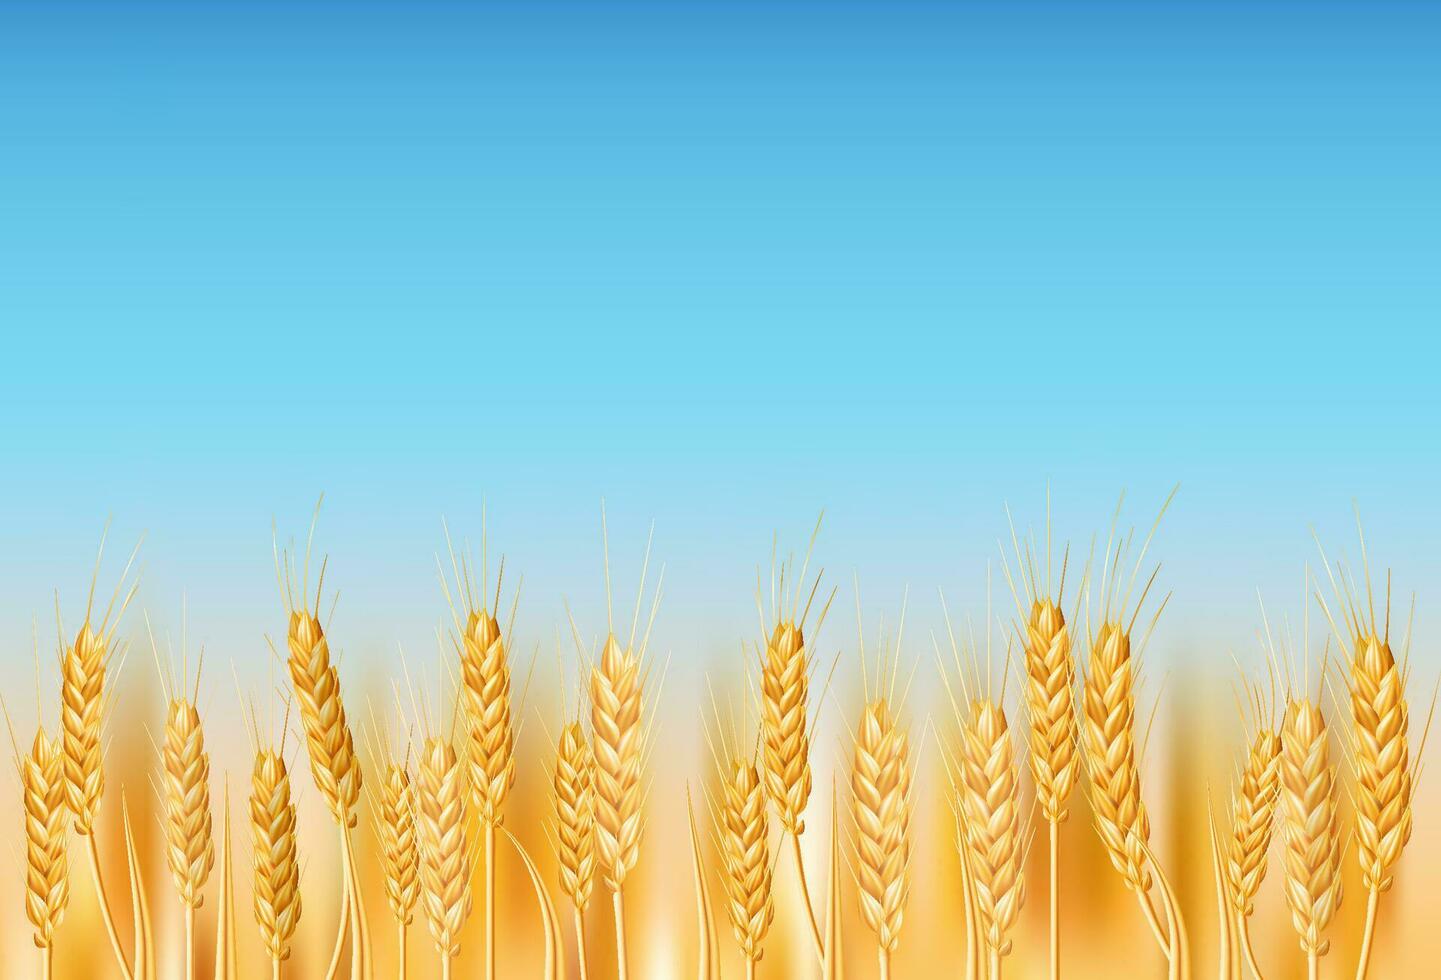 d'or blé champ dans le ukrainien campagne. idéal pour agriculture, agriculture, et la nature à thème conceptions. illustration de mûr céréale cultures en dessous de une bleu ciel. réaliste dessin avec biologique agriculture vecteur